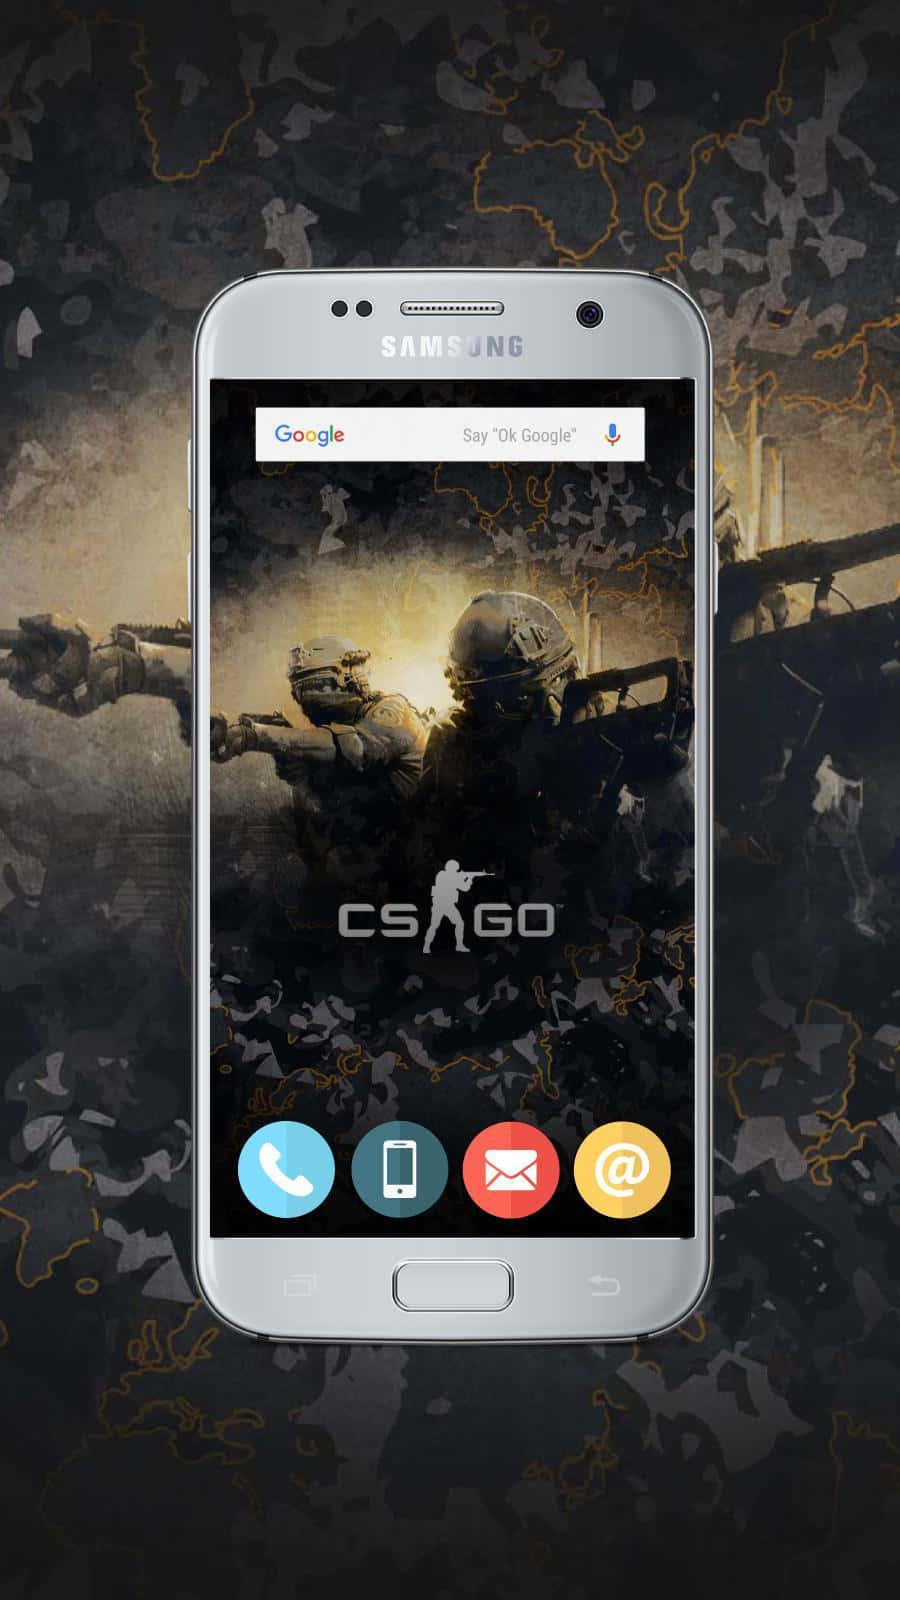 Fondode Pantalla De Counter-strike Global Offensive Csgo En Un Dispositivo Android